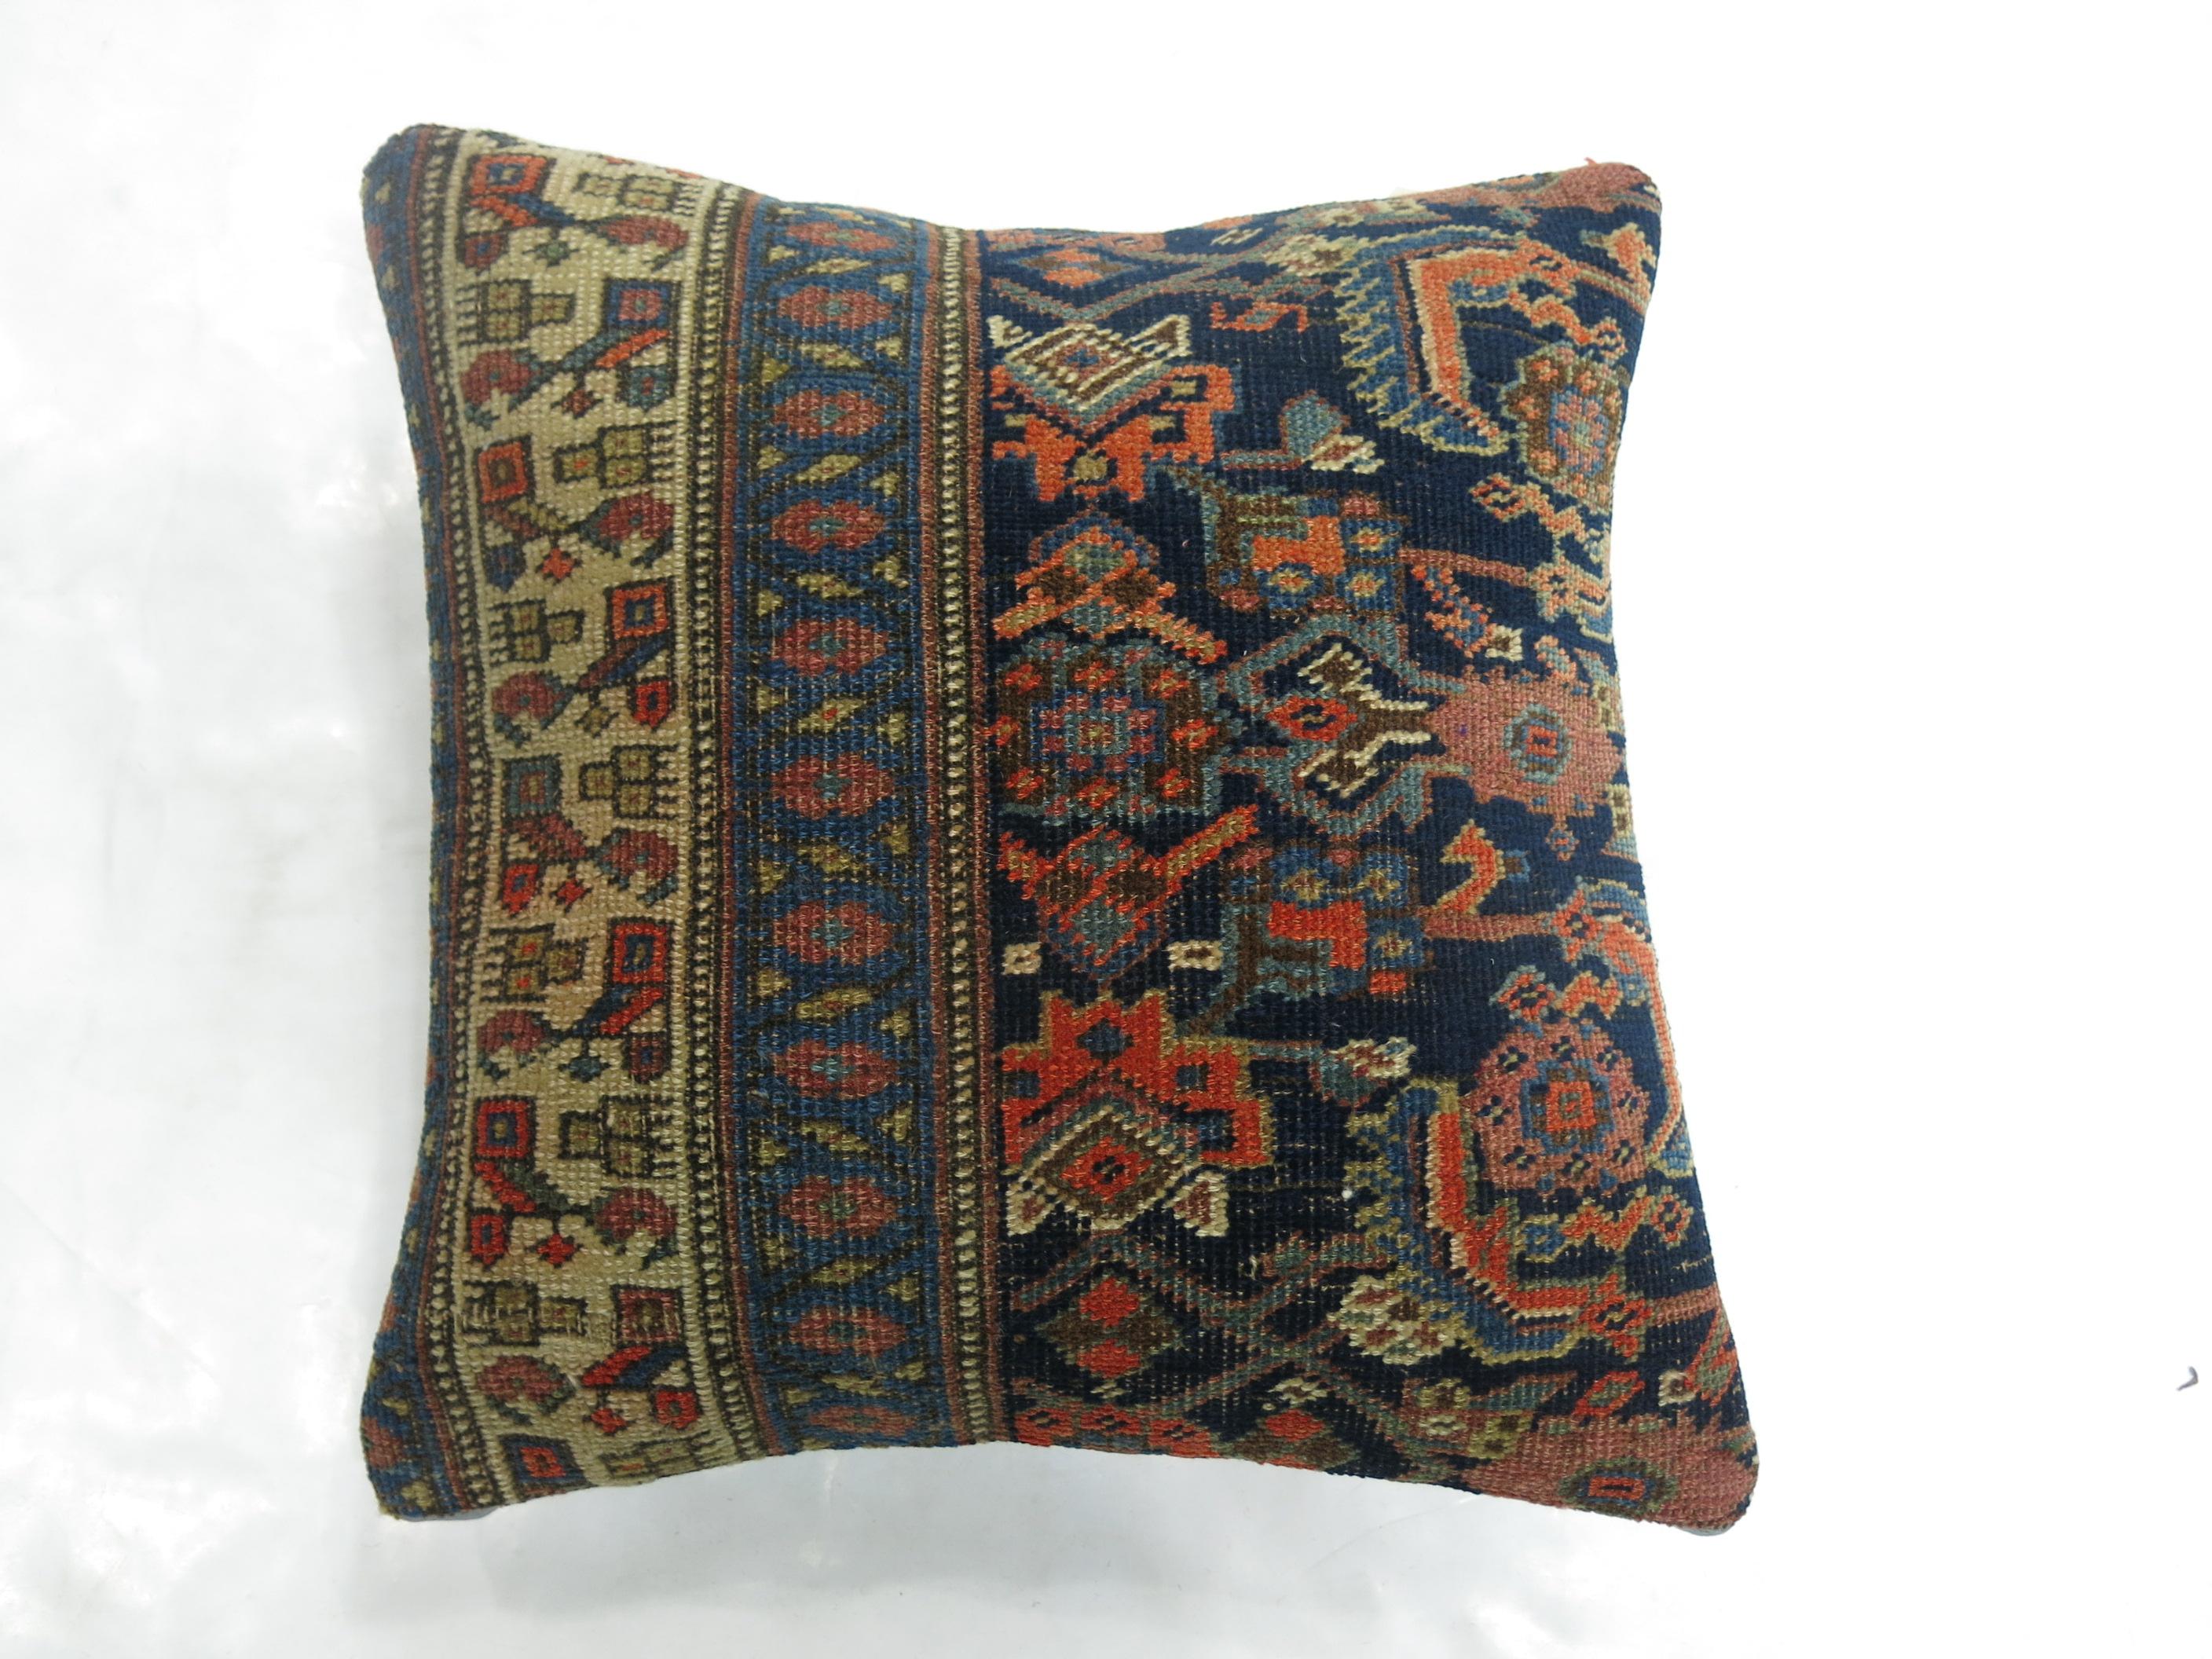 Kissen aus einem persischen Bidjar-Teppich aus der Jahrhundertwende. Inklusive Polyfill-Einsatz und Reißverschluss

Maße: 17'' x 17''.